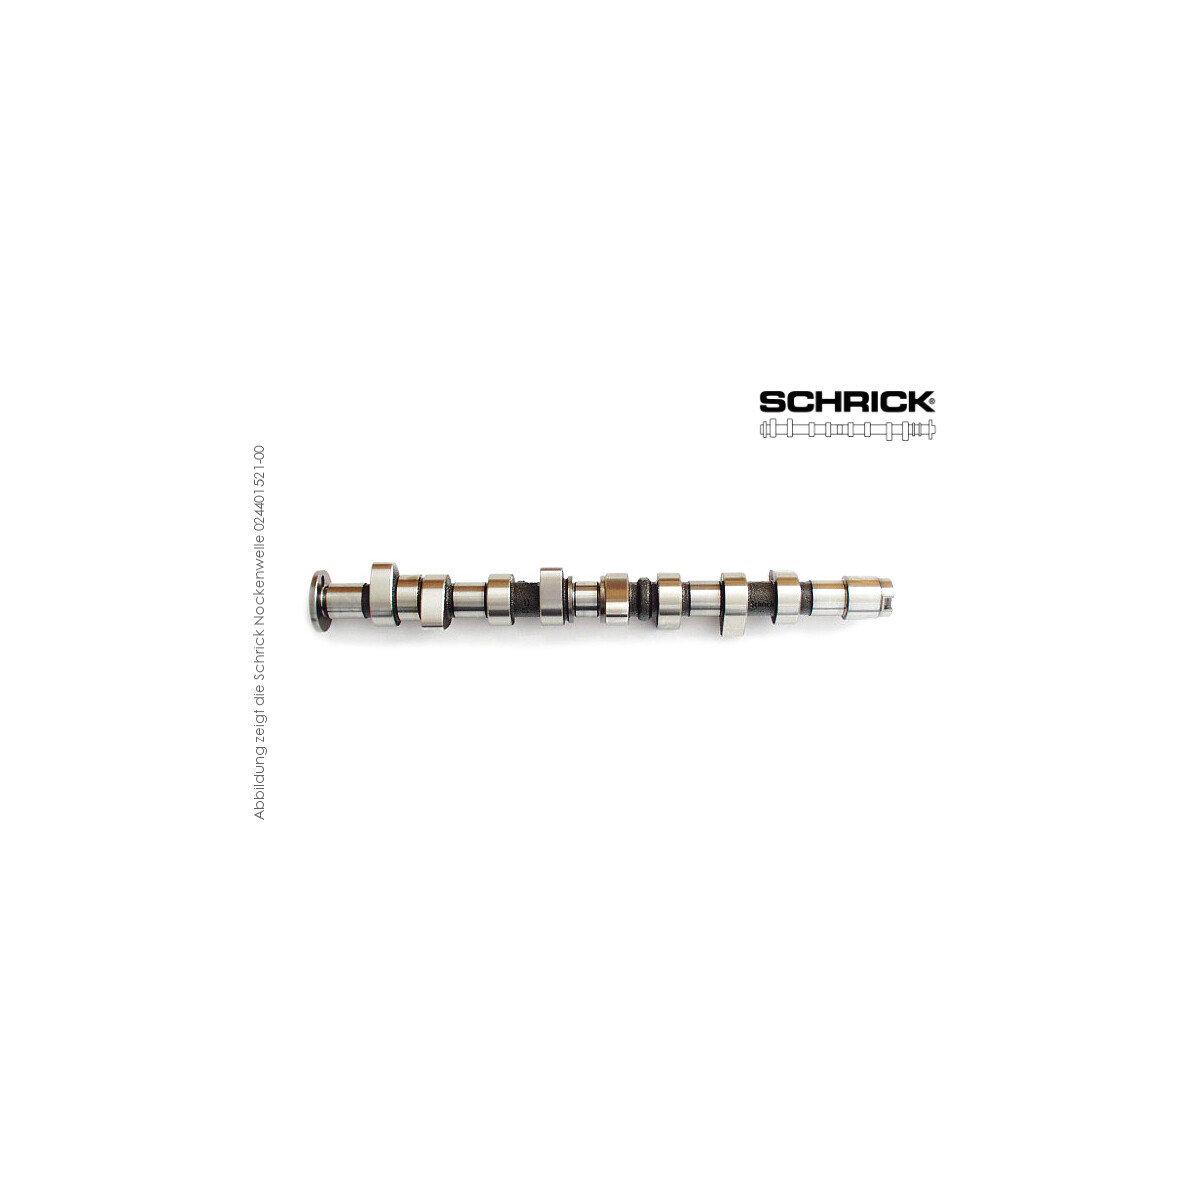 Schrick Nockenwelle für BMW M3 E30 | 2,0-2,5L 16V 4-Zyl. S14  | 276° Synchron (Schrick 0227D1760-01)